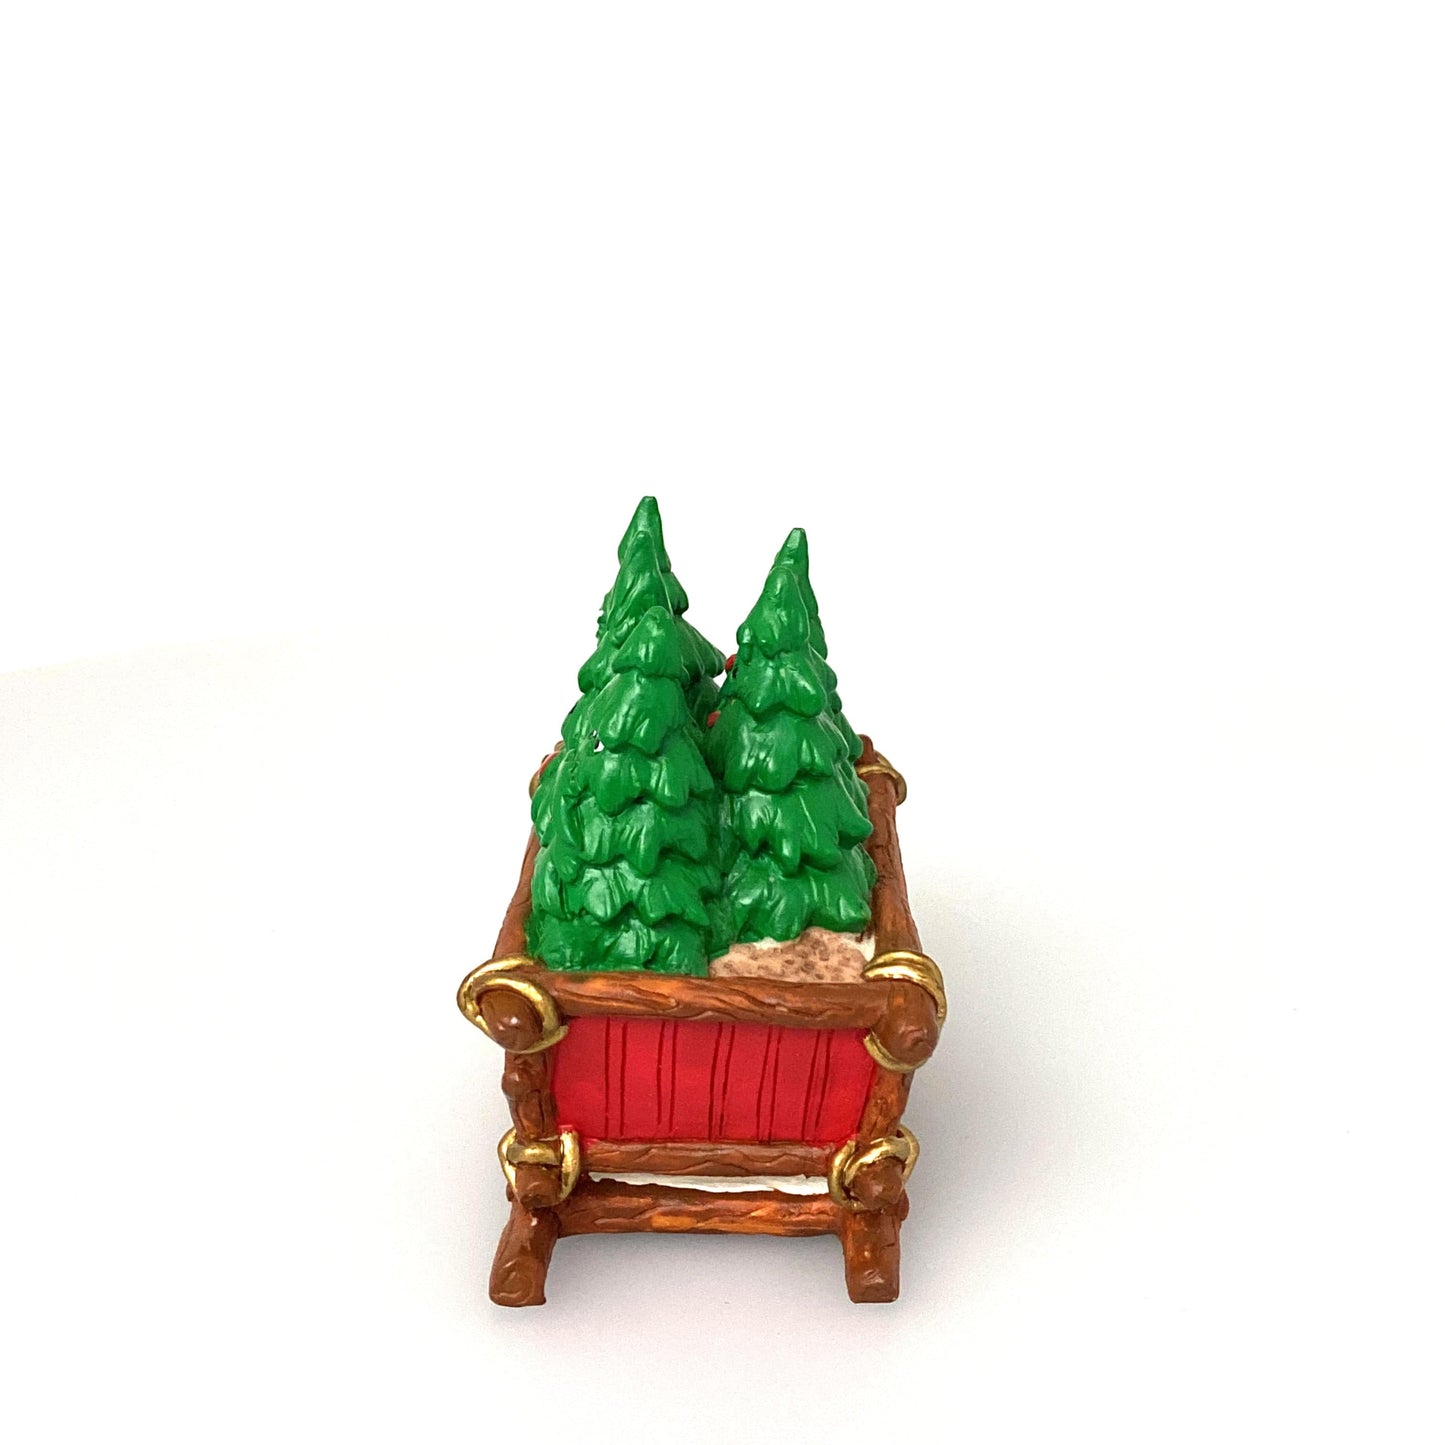 Vintage 1996 North Pole Ltd. “Christmas Tree” Seasonal Holiday Table-Top Decoration